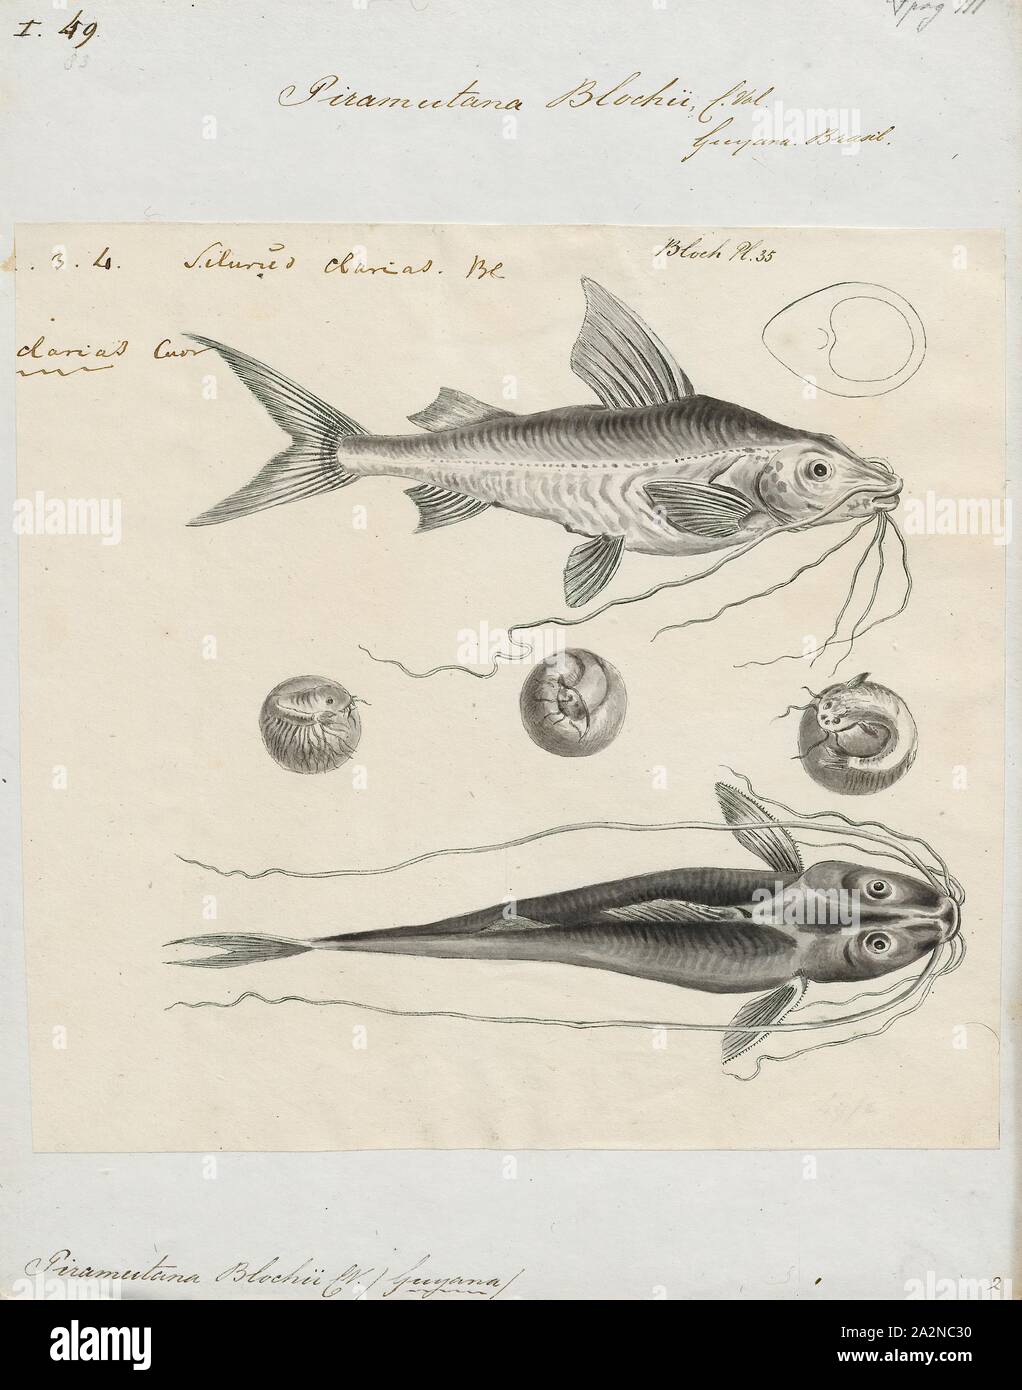 Piramutana blochii, Print, 1700-1880 Stock Photo